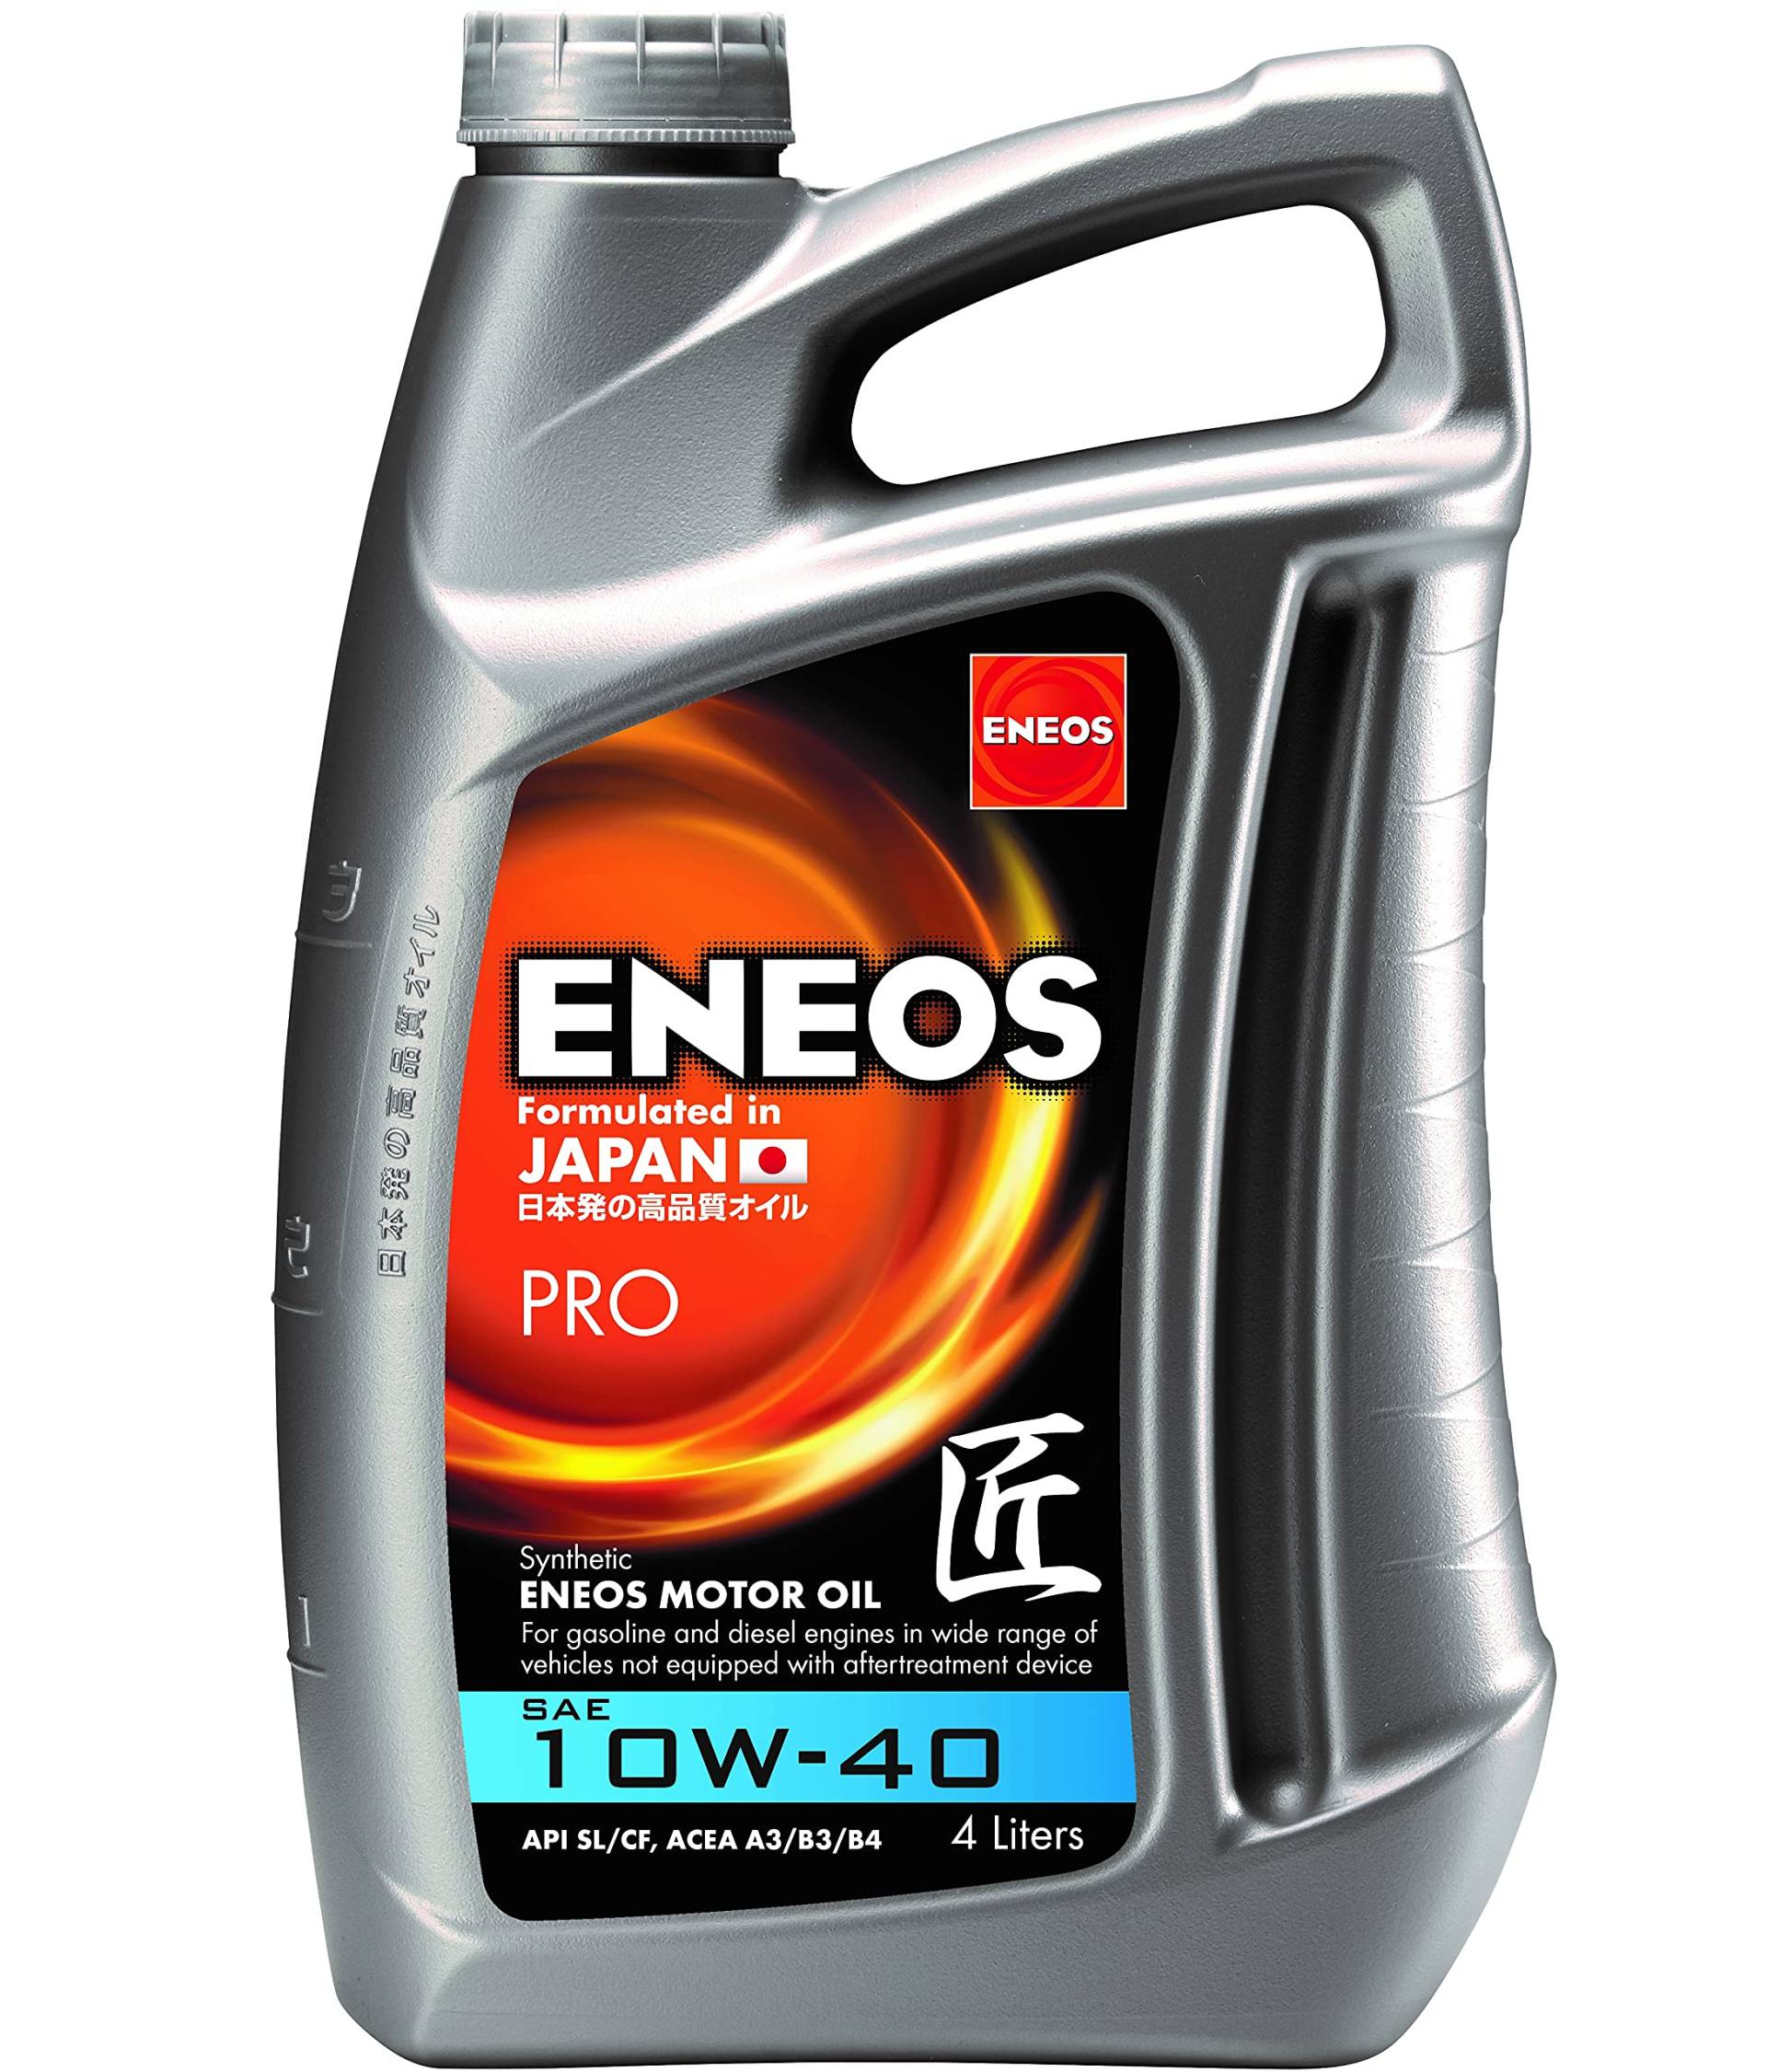 ENEOS Motoröl 10W40 “PRO” 4L - Motorenöl für Auto - Synthetik Motor Öl mit Organischen Zusätzen - Weniger Kraftstoffverbrauch - Motorschutz von Eneos